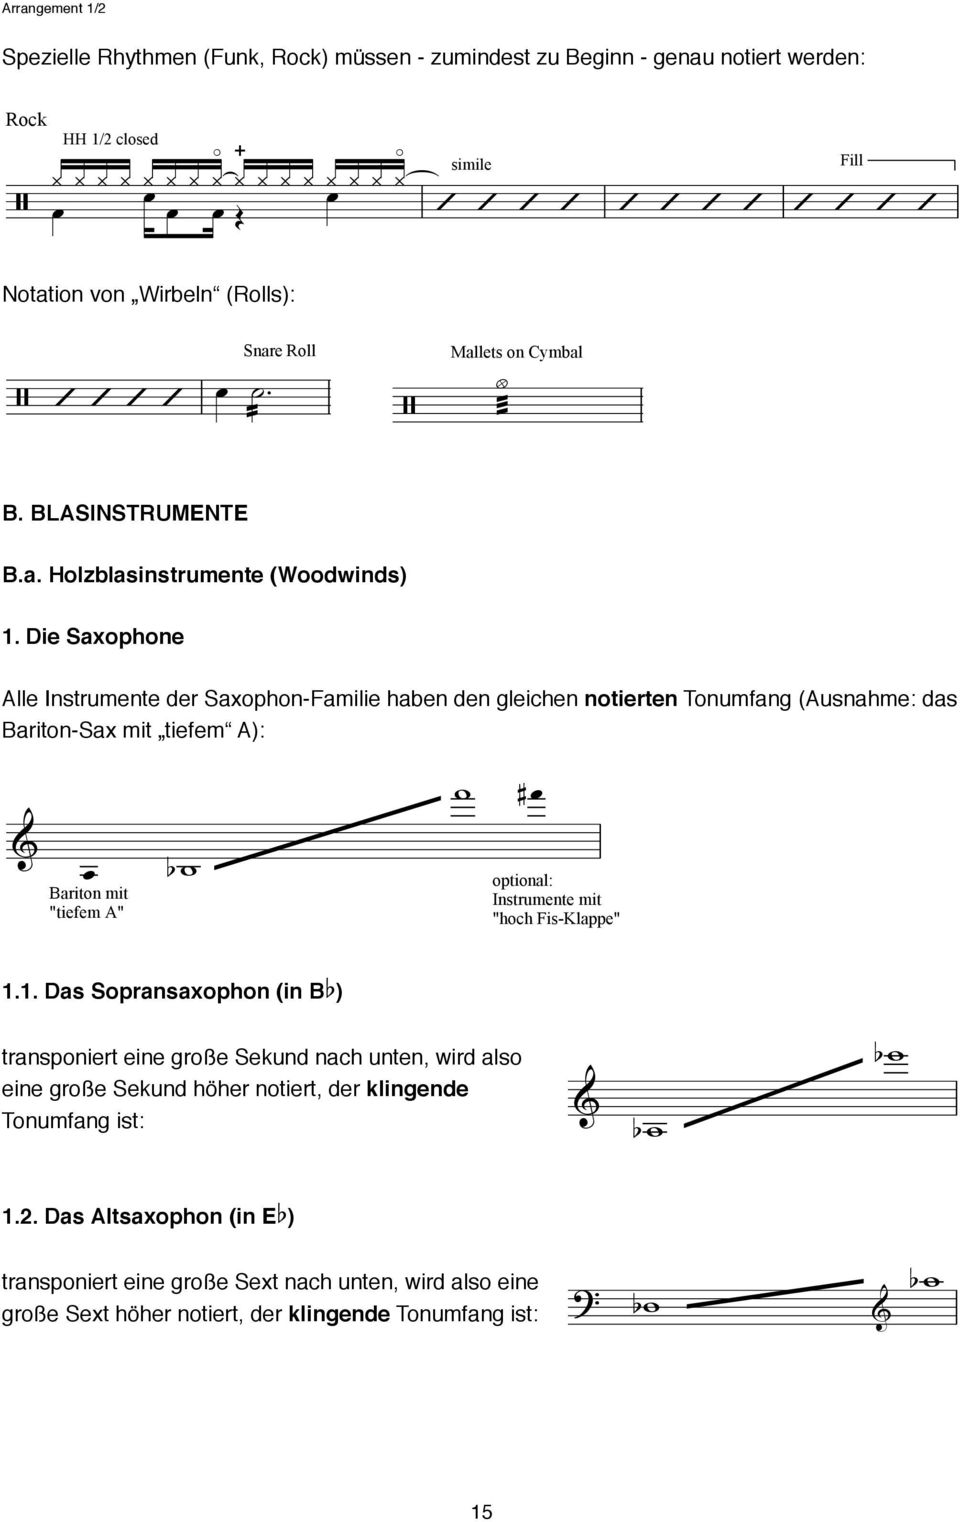 Die Saxophone Alle Instrumente der Saxophon-Familie haben den gleichen notierten Tonumfang (Ausnahme: das Bariton-Sax mit tiefem A): Bariton mit "tiefem A" optional: Instrumente